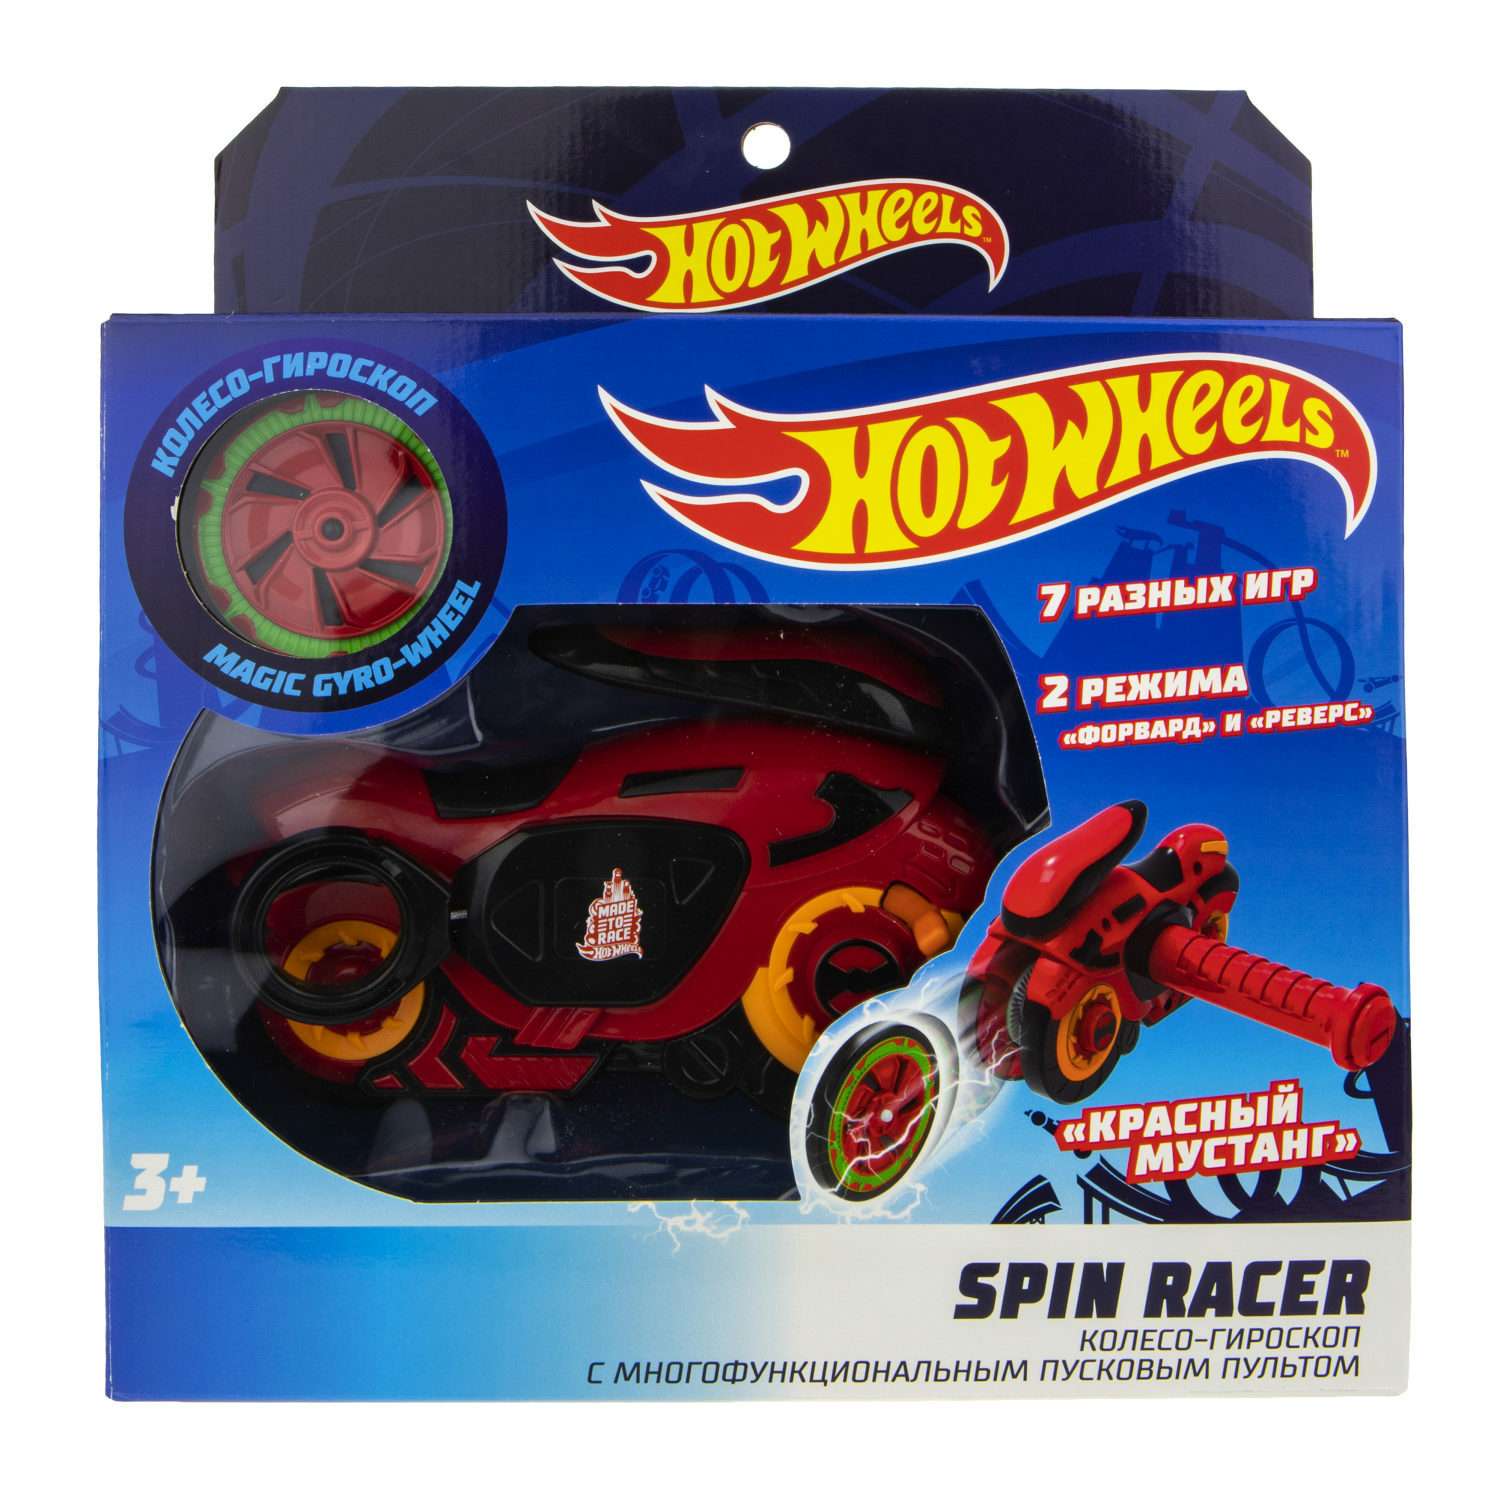 Игровой набор Hot Wheels Spin Racer Красный Мустанг игрушечный мотоцикл с колесом-гироскопом Т19372 - фото 11